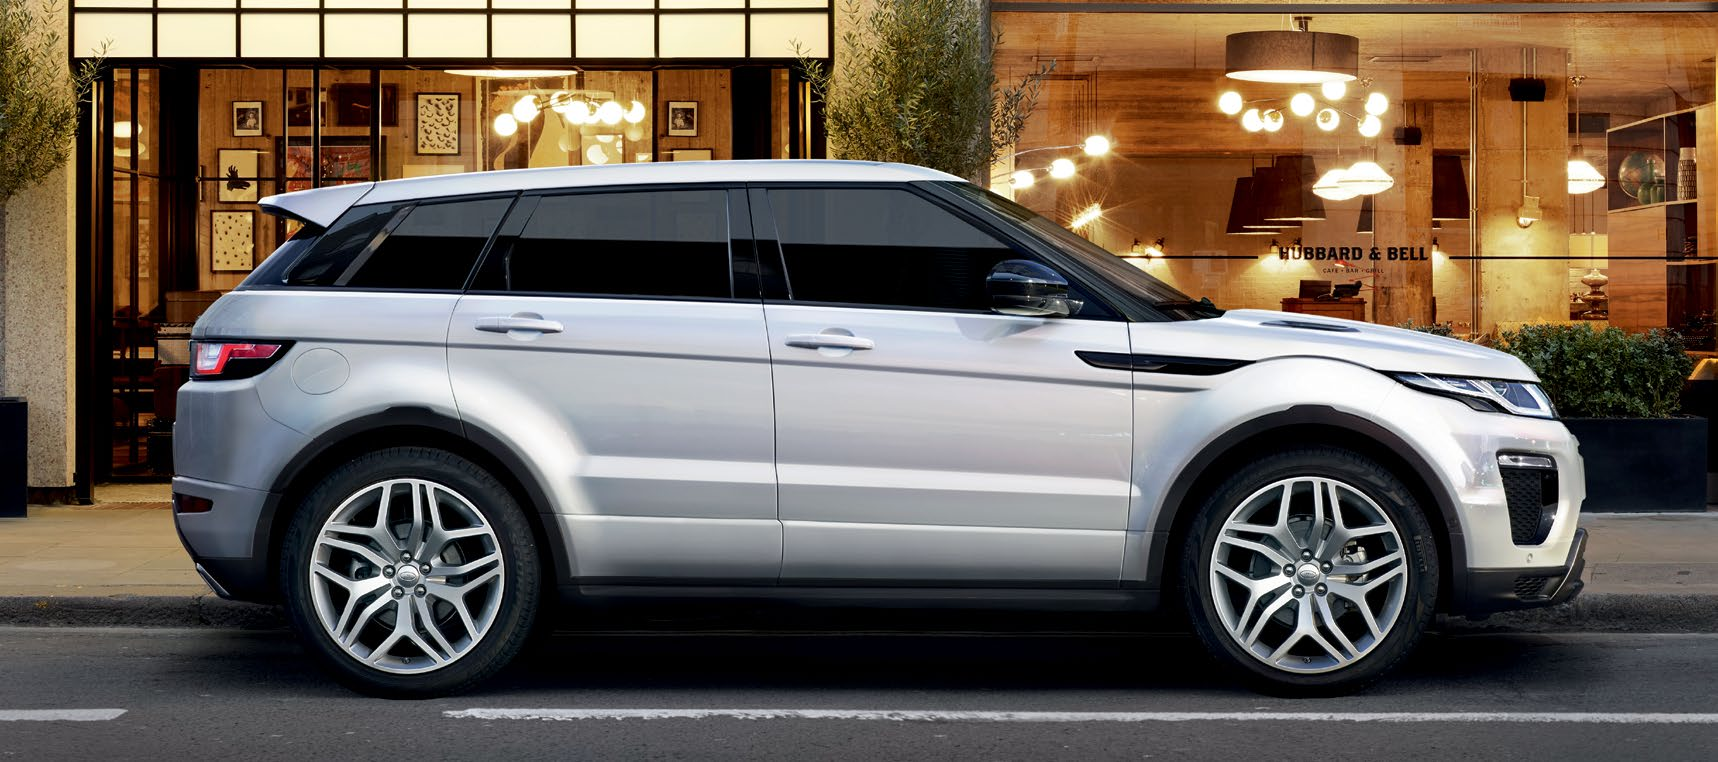 PĚTIDVEŘOVÝ MODEL Range Rover Evoque s pětidveřovou karoserií poskytuje vysokou úroveň funkčnosti, aniž by slevoval z moderního designu či stylu.